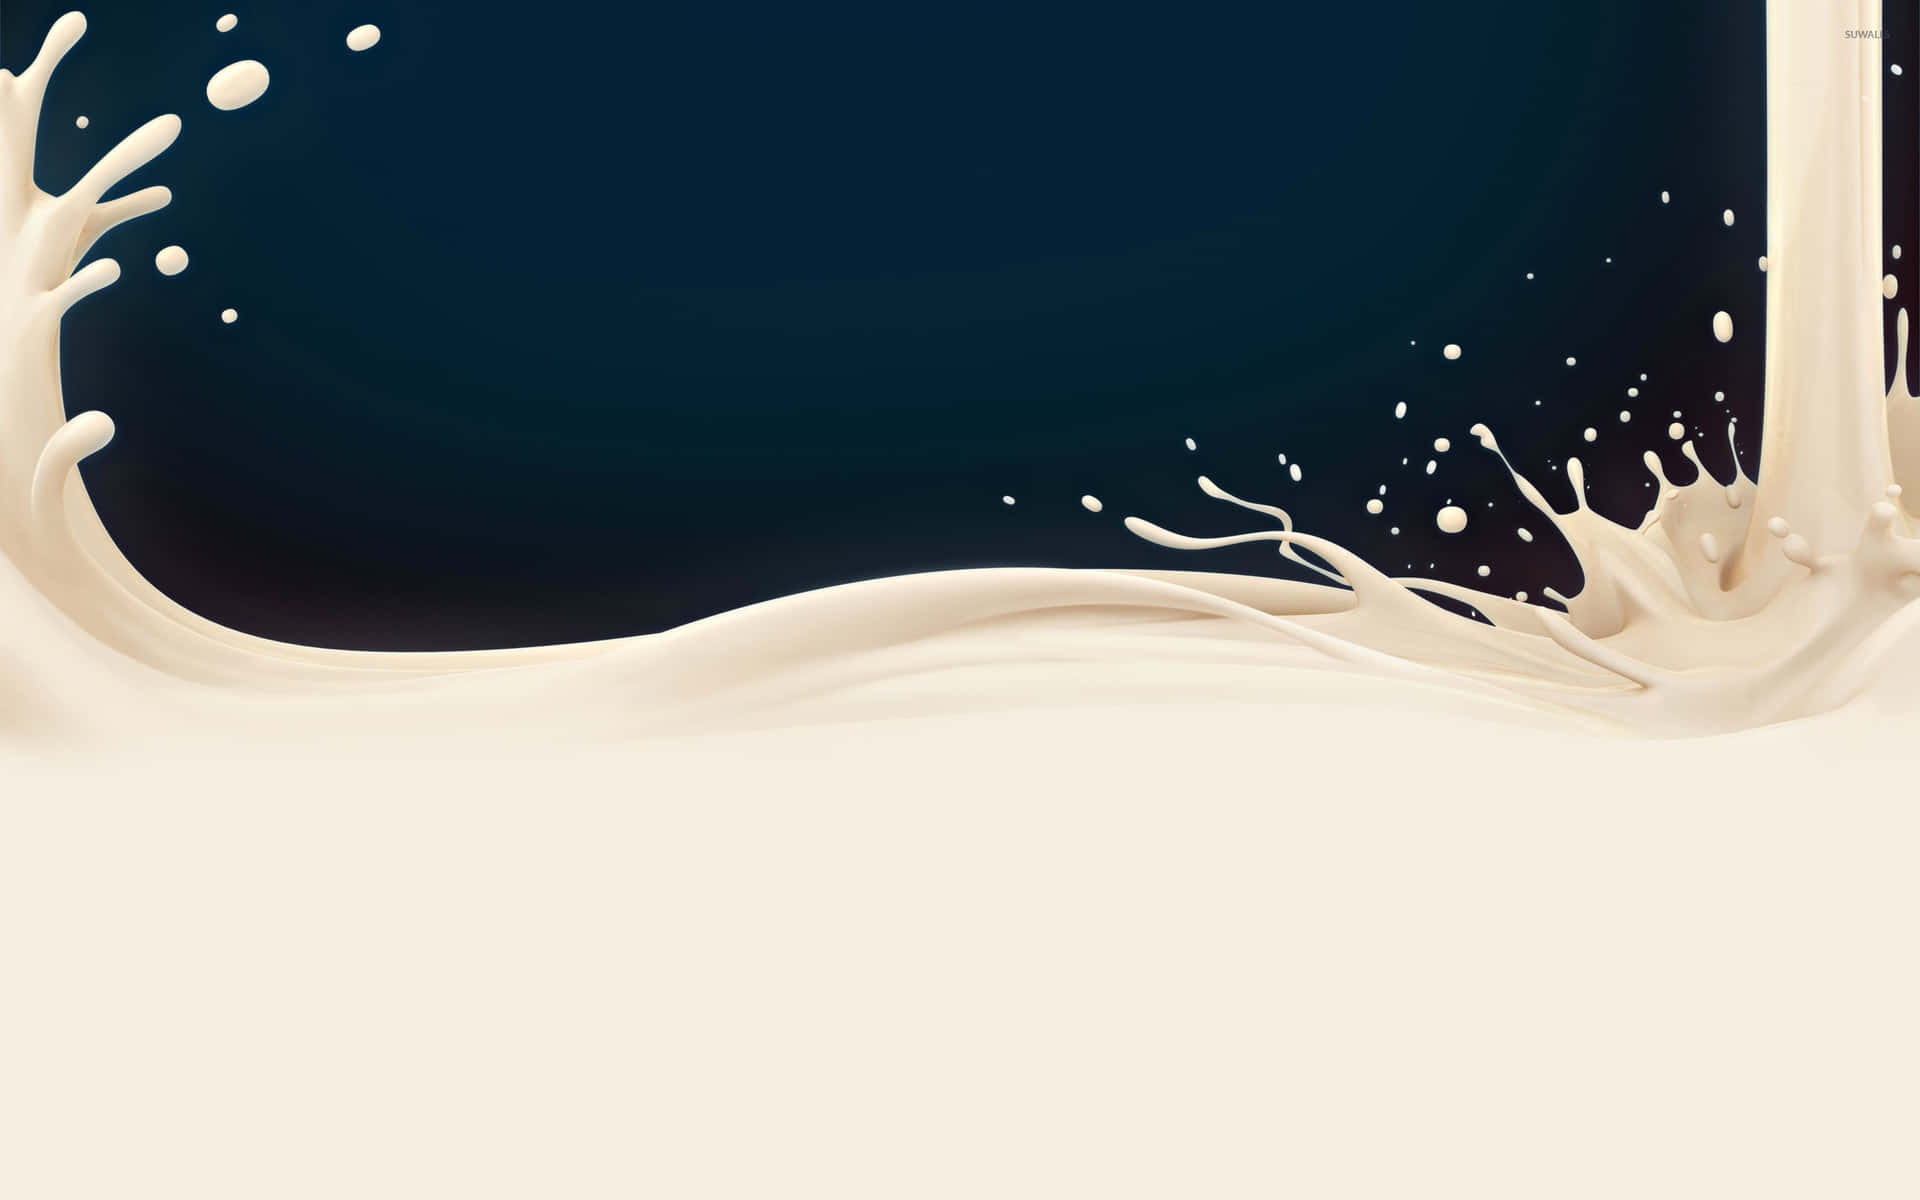 Milk Splash On A Dark Background